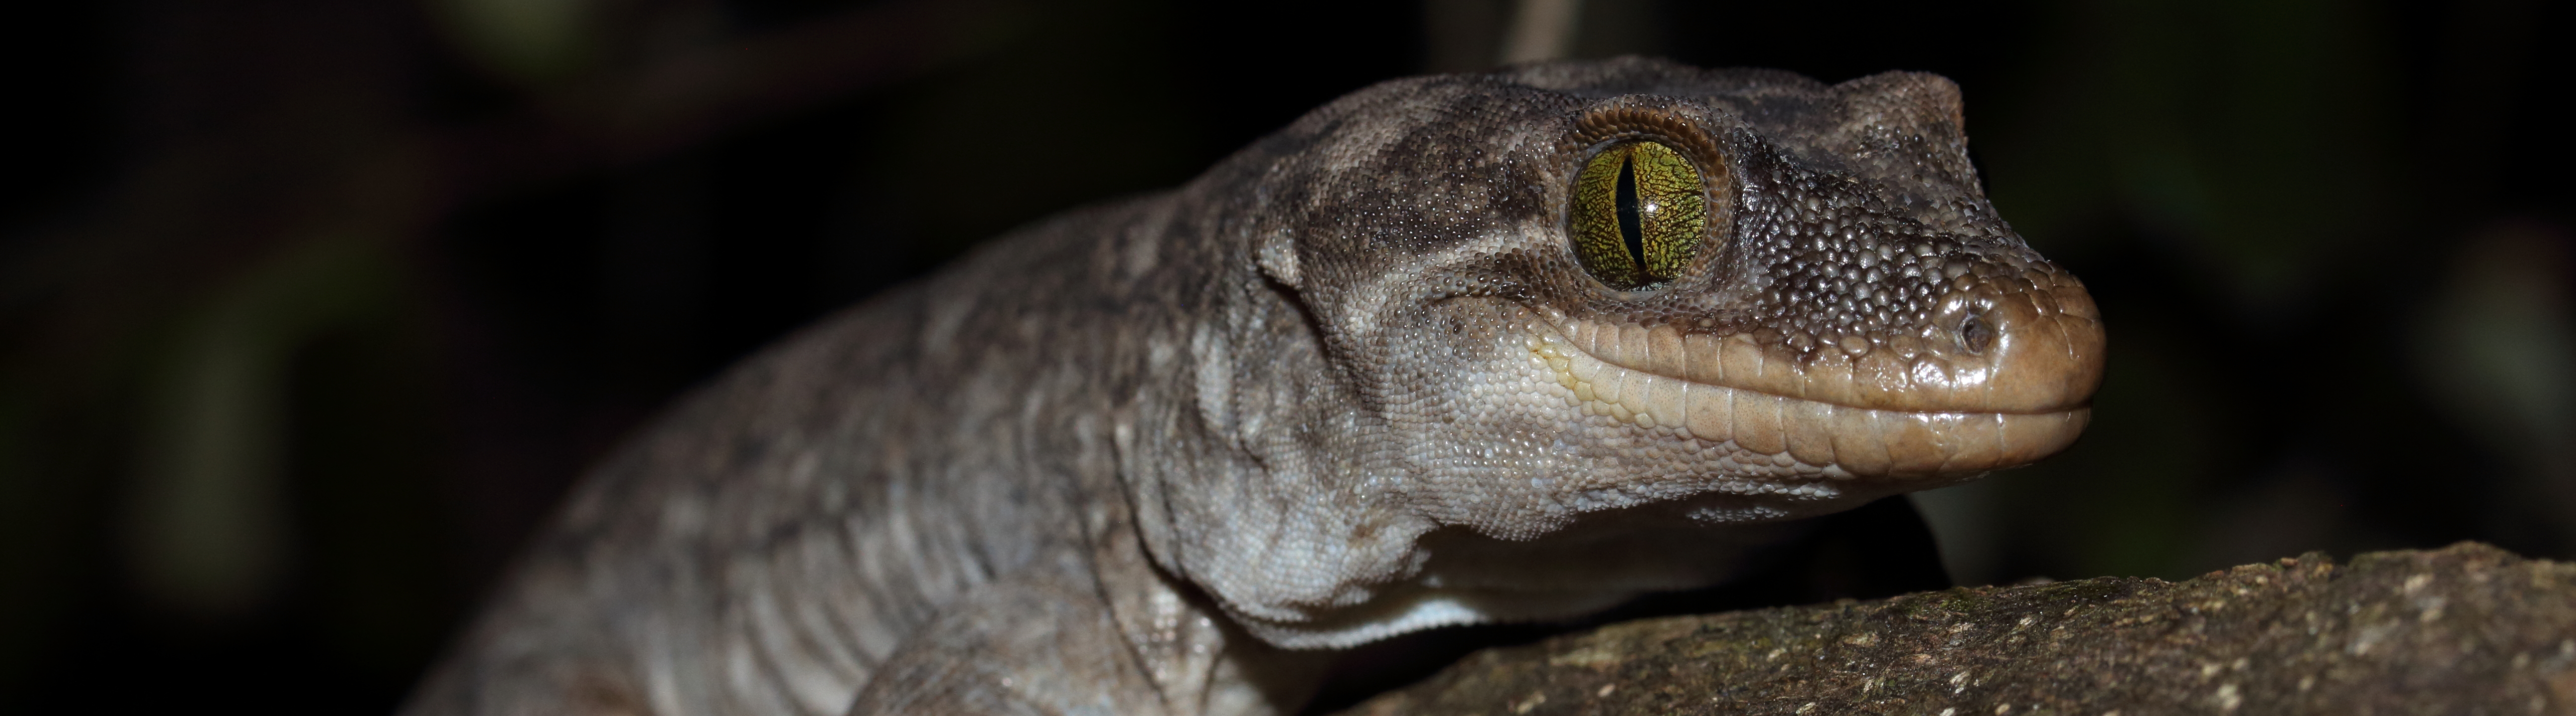 Duvaucel's gecko <a href="https://www.instagram.com/nickharker.nz/">© Nick Harker</a>